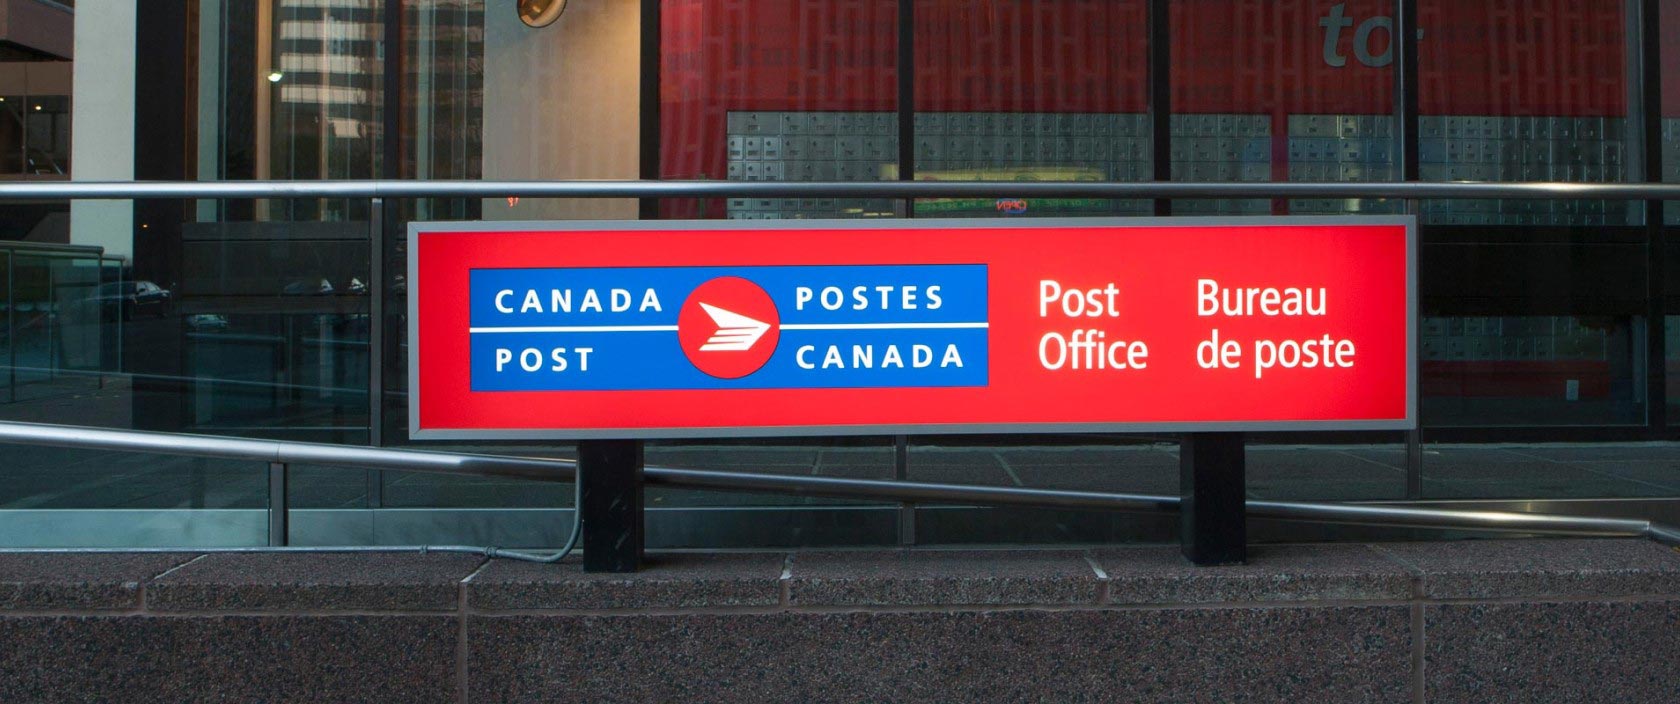 Gros plan d’une grande enseigne affichant le logo bilingue de Postes Canada